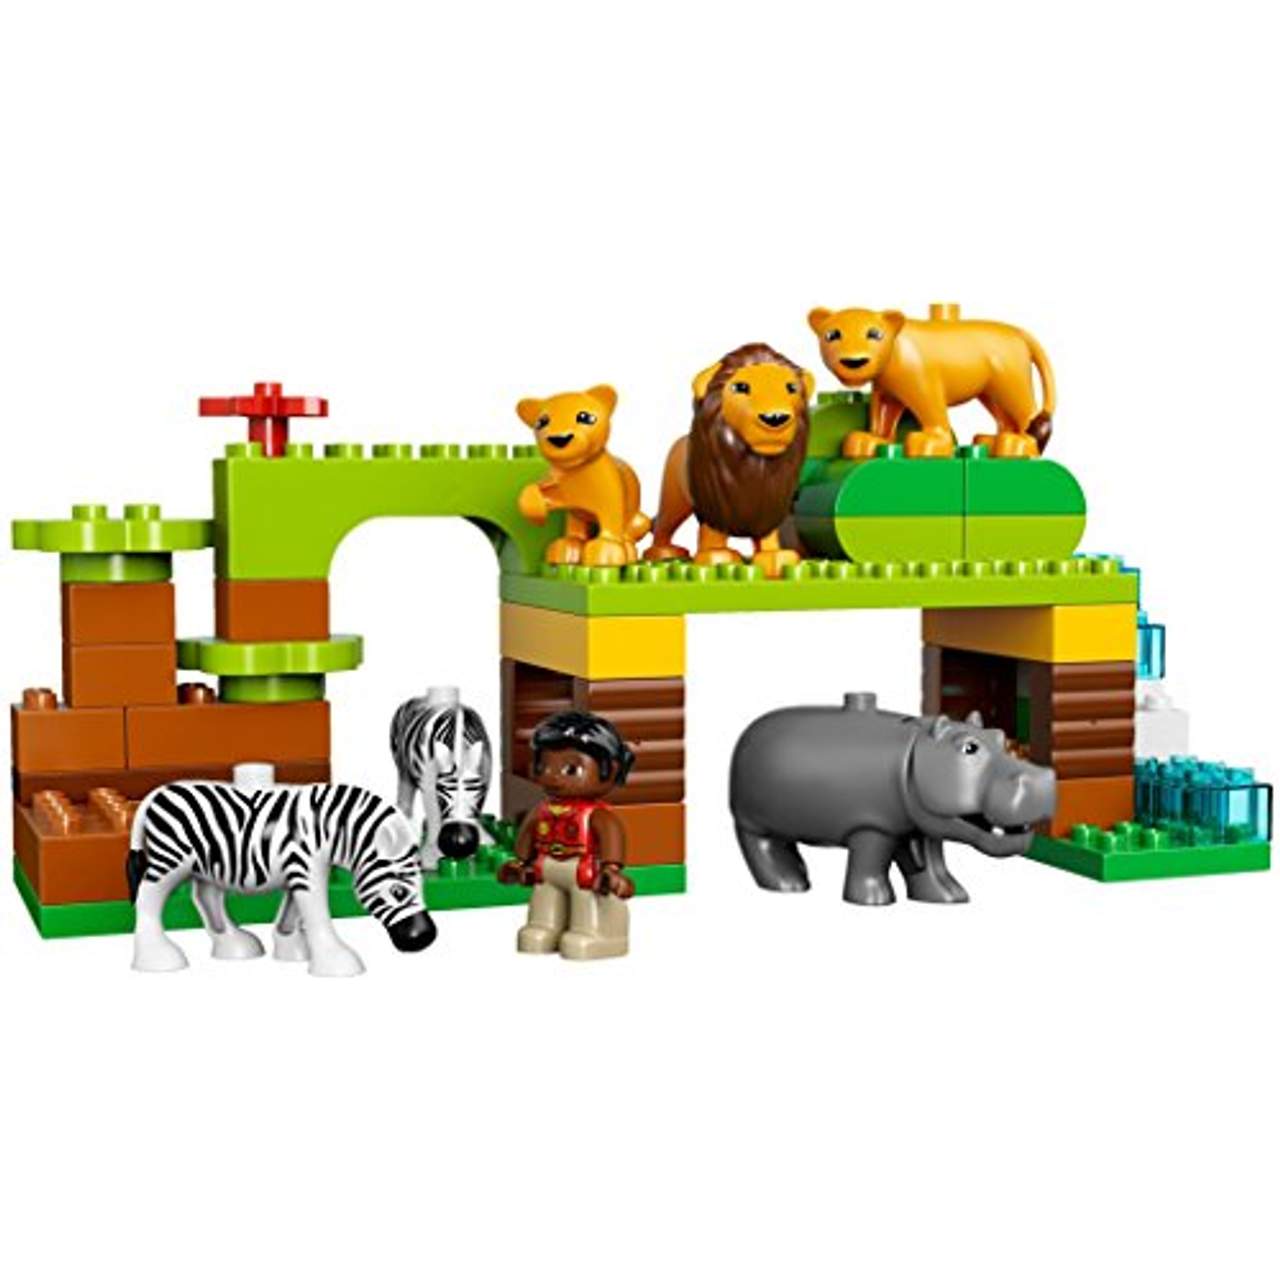 LEGO Duplo 10805 Einmal um die Welt